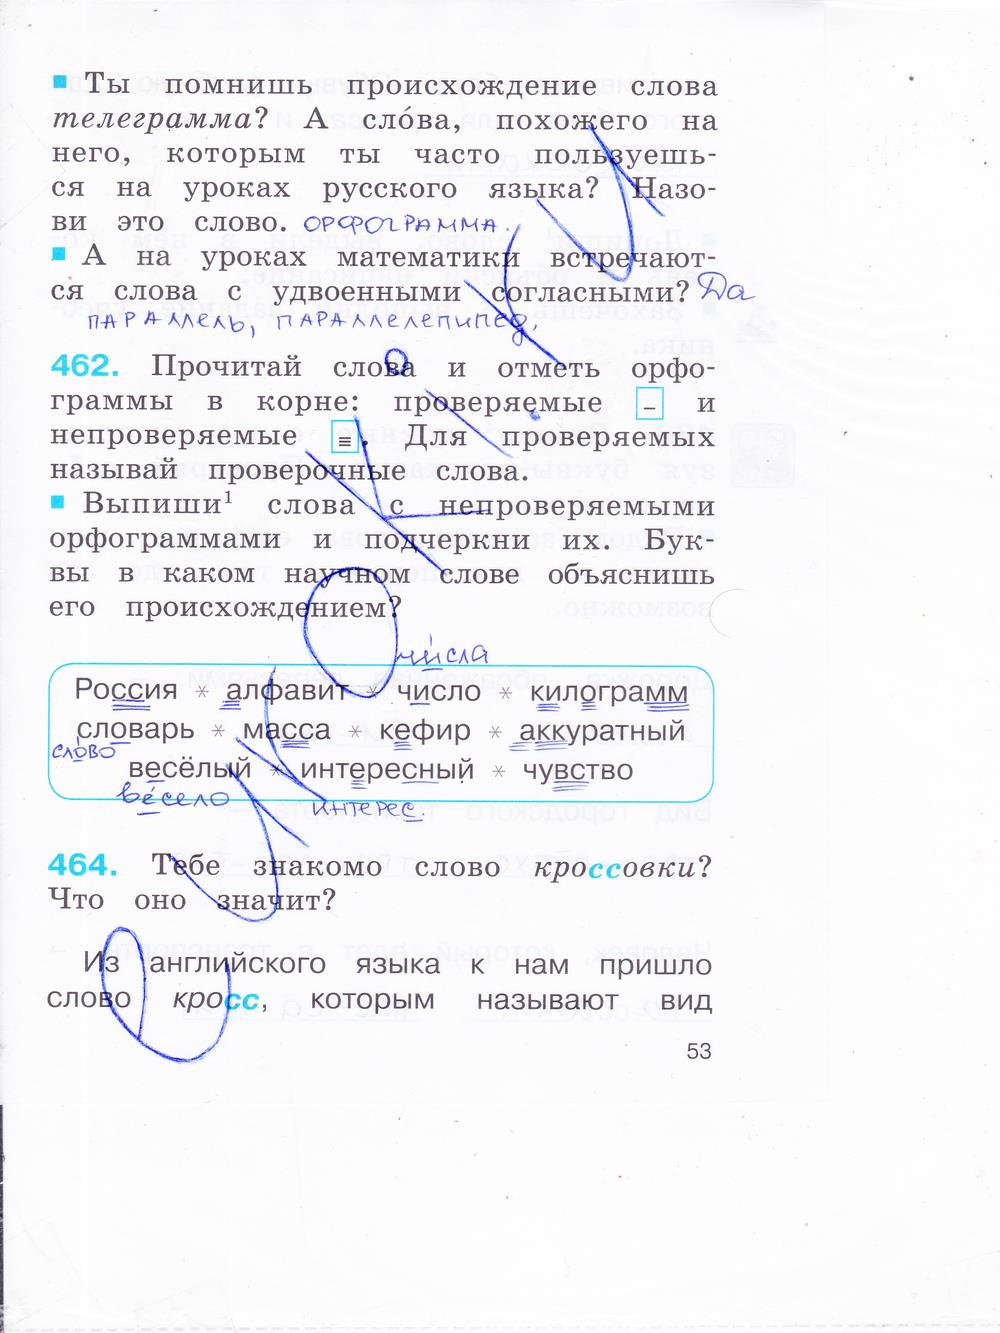 Телеграмма по русскому языку 2 класс фото 23